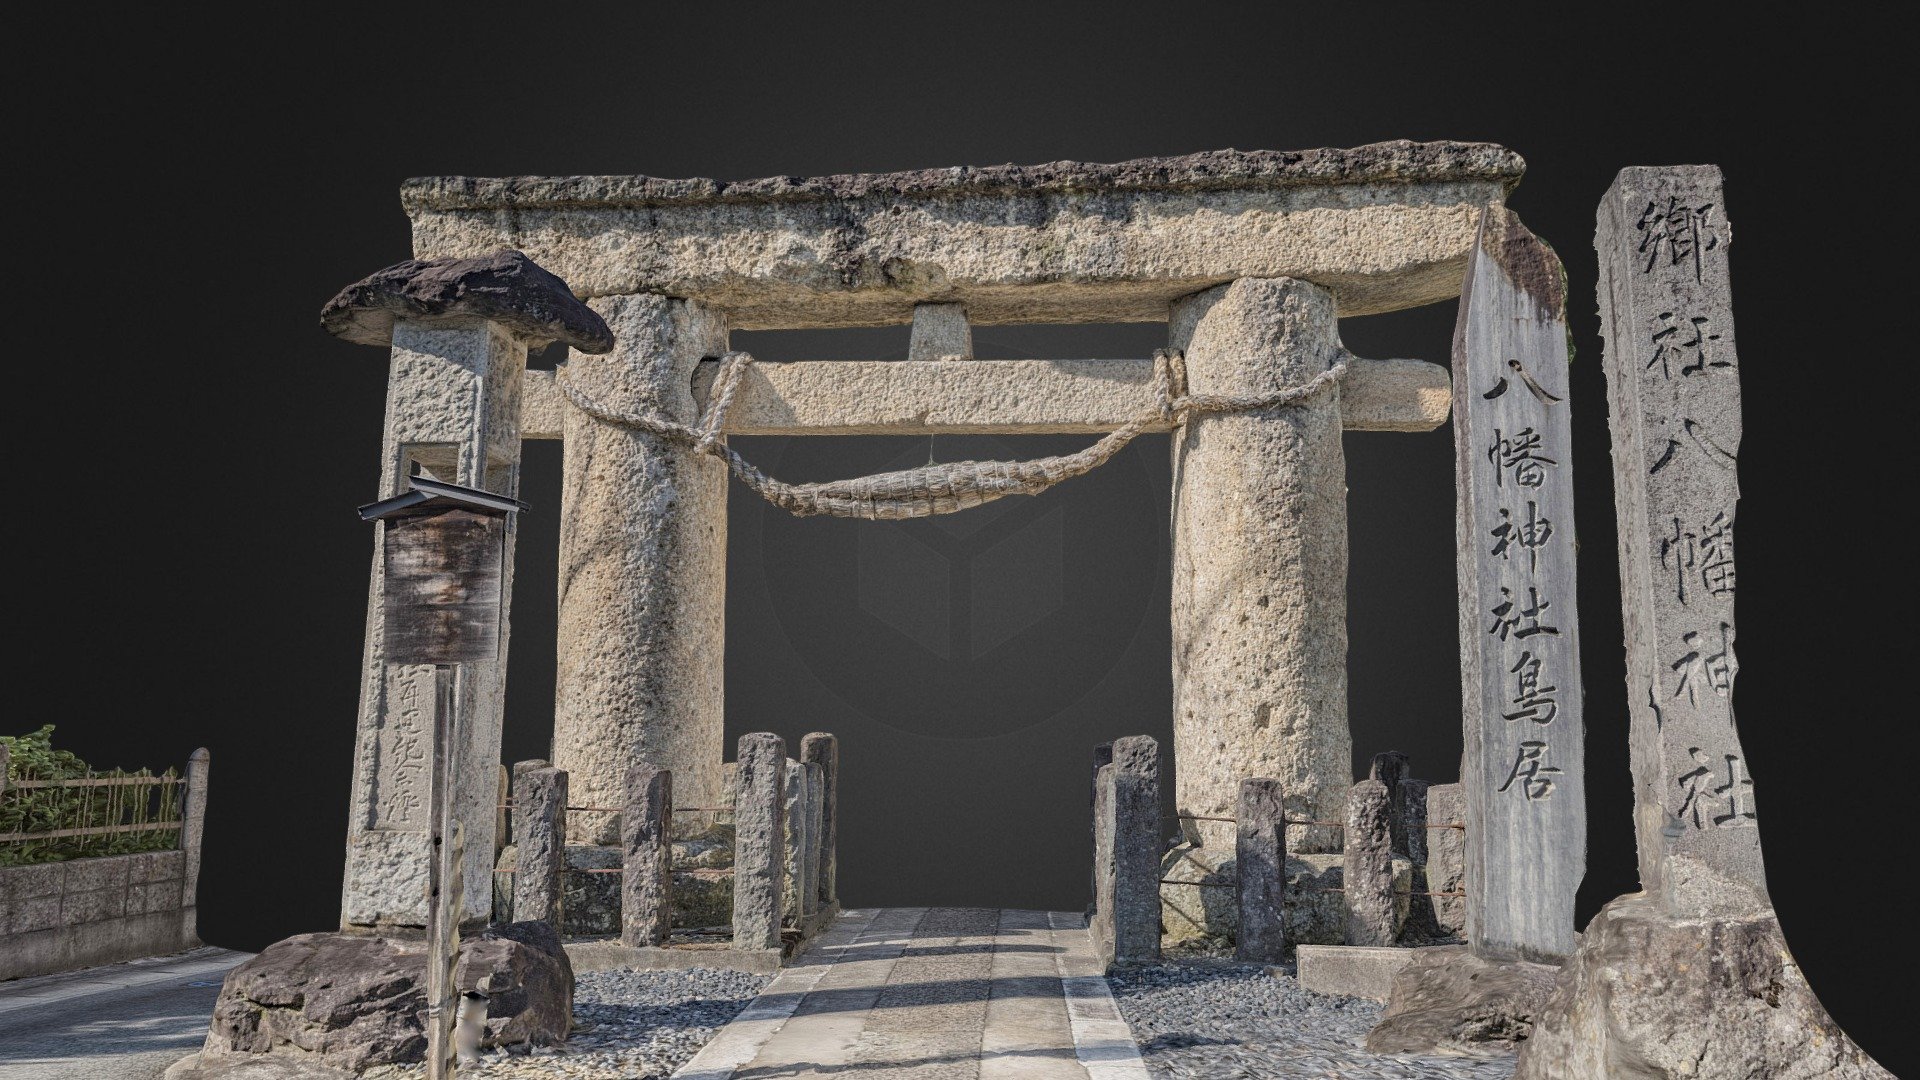 国重要文化財　八幡神社 石鳥居(山形県山形市)
Date : Late Heian Period,1086-1184

Cultural property designation : National Important Cultural Property  

The torii is a gate at the entrance or precinct of the Shinto Shrine. It is said to be one of the oldest stone torii in Japan.

wikipedia:Torii gate   

　　

3D digitizing methods : Photogrammetry

Software : Reality Capture

Equipment : Nikon D750,NIKKOR 16-35mm f/4G,SB-910

Images : 339 photos

Address : Yamagata-city, Yamagata-prefecture.Japan.

GoogleMap : https://goo.gl/maps/diPzzHAvP3yDekVc9

掲載確認済 - Hatiman Shrine Torii gate(Japan) - 3D model by Fuji (@fujisan) 3d model